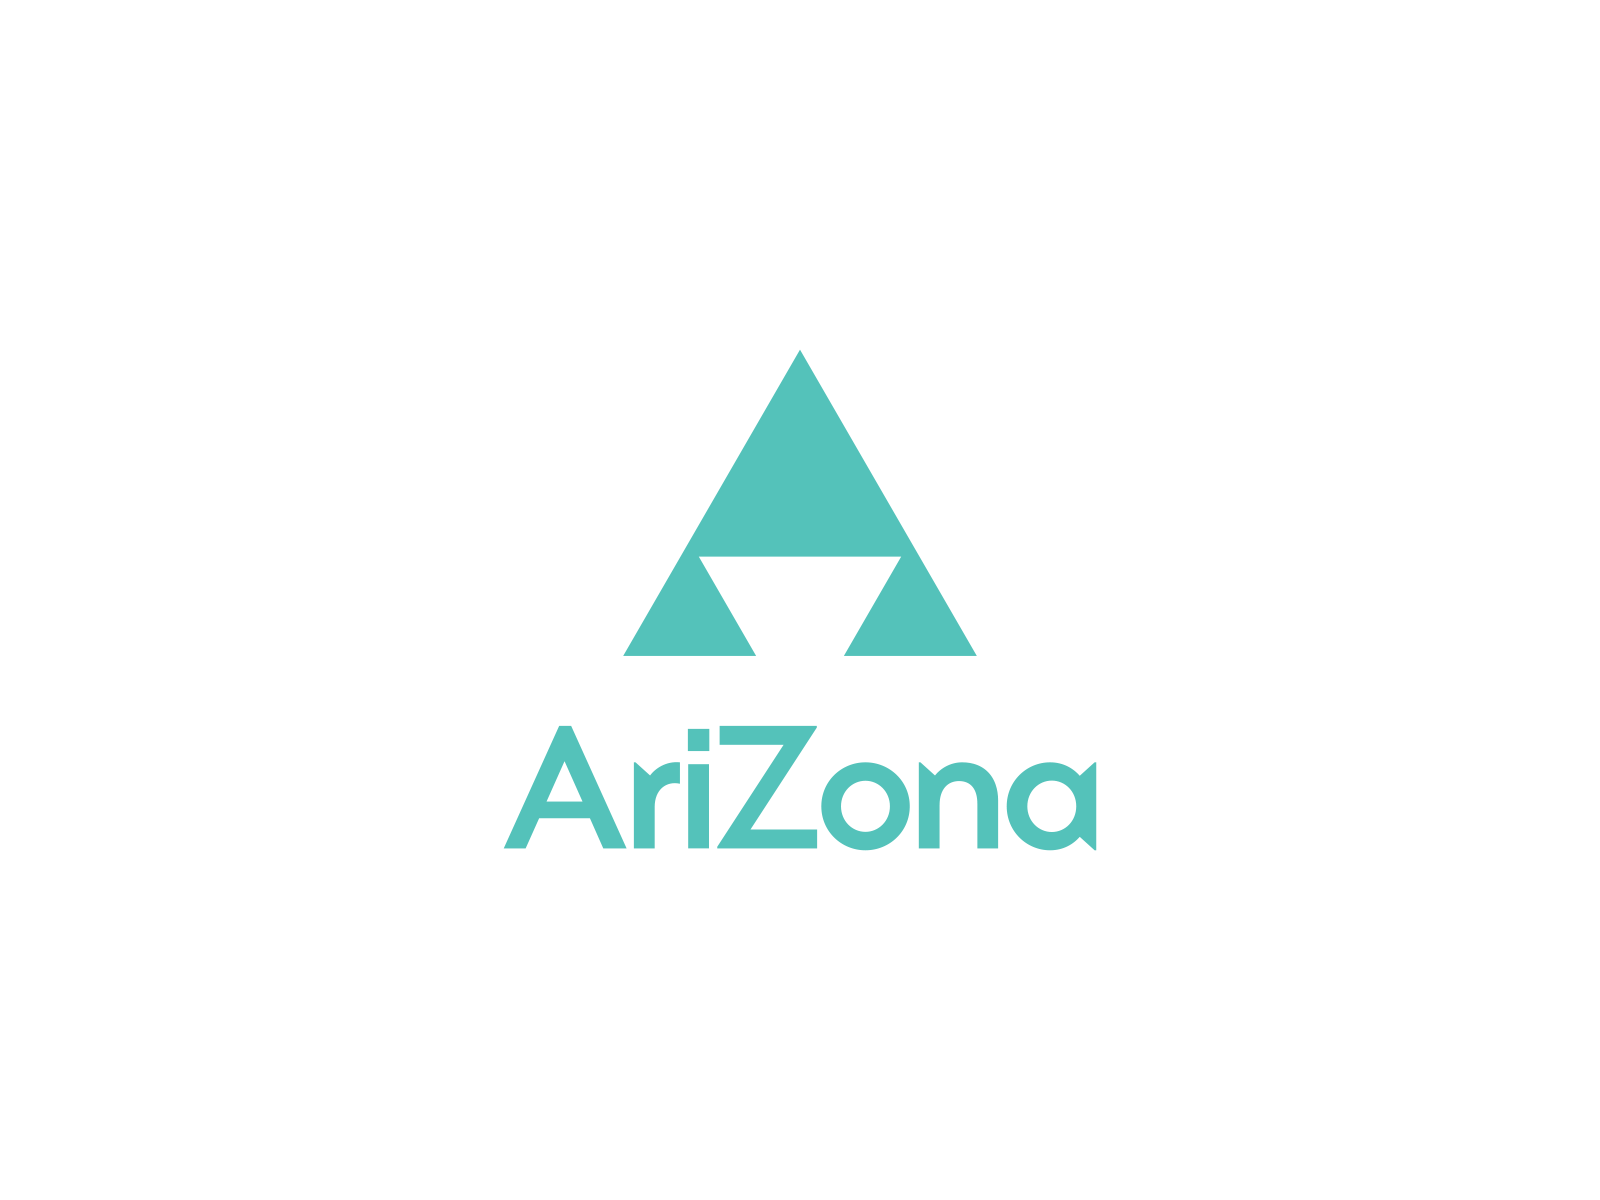 AriZona Iced Tea Logo Redesign Concept a arizona design flat icedtea icon logo pattern pictogram tea teal vector